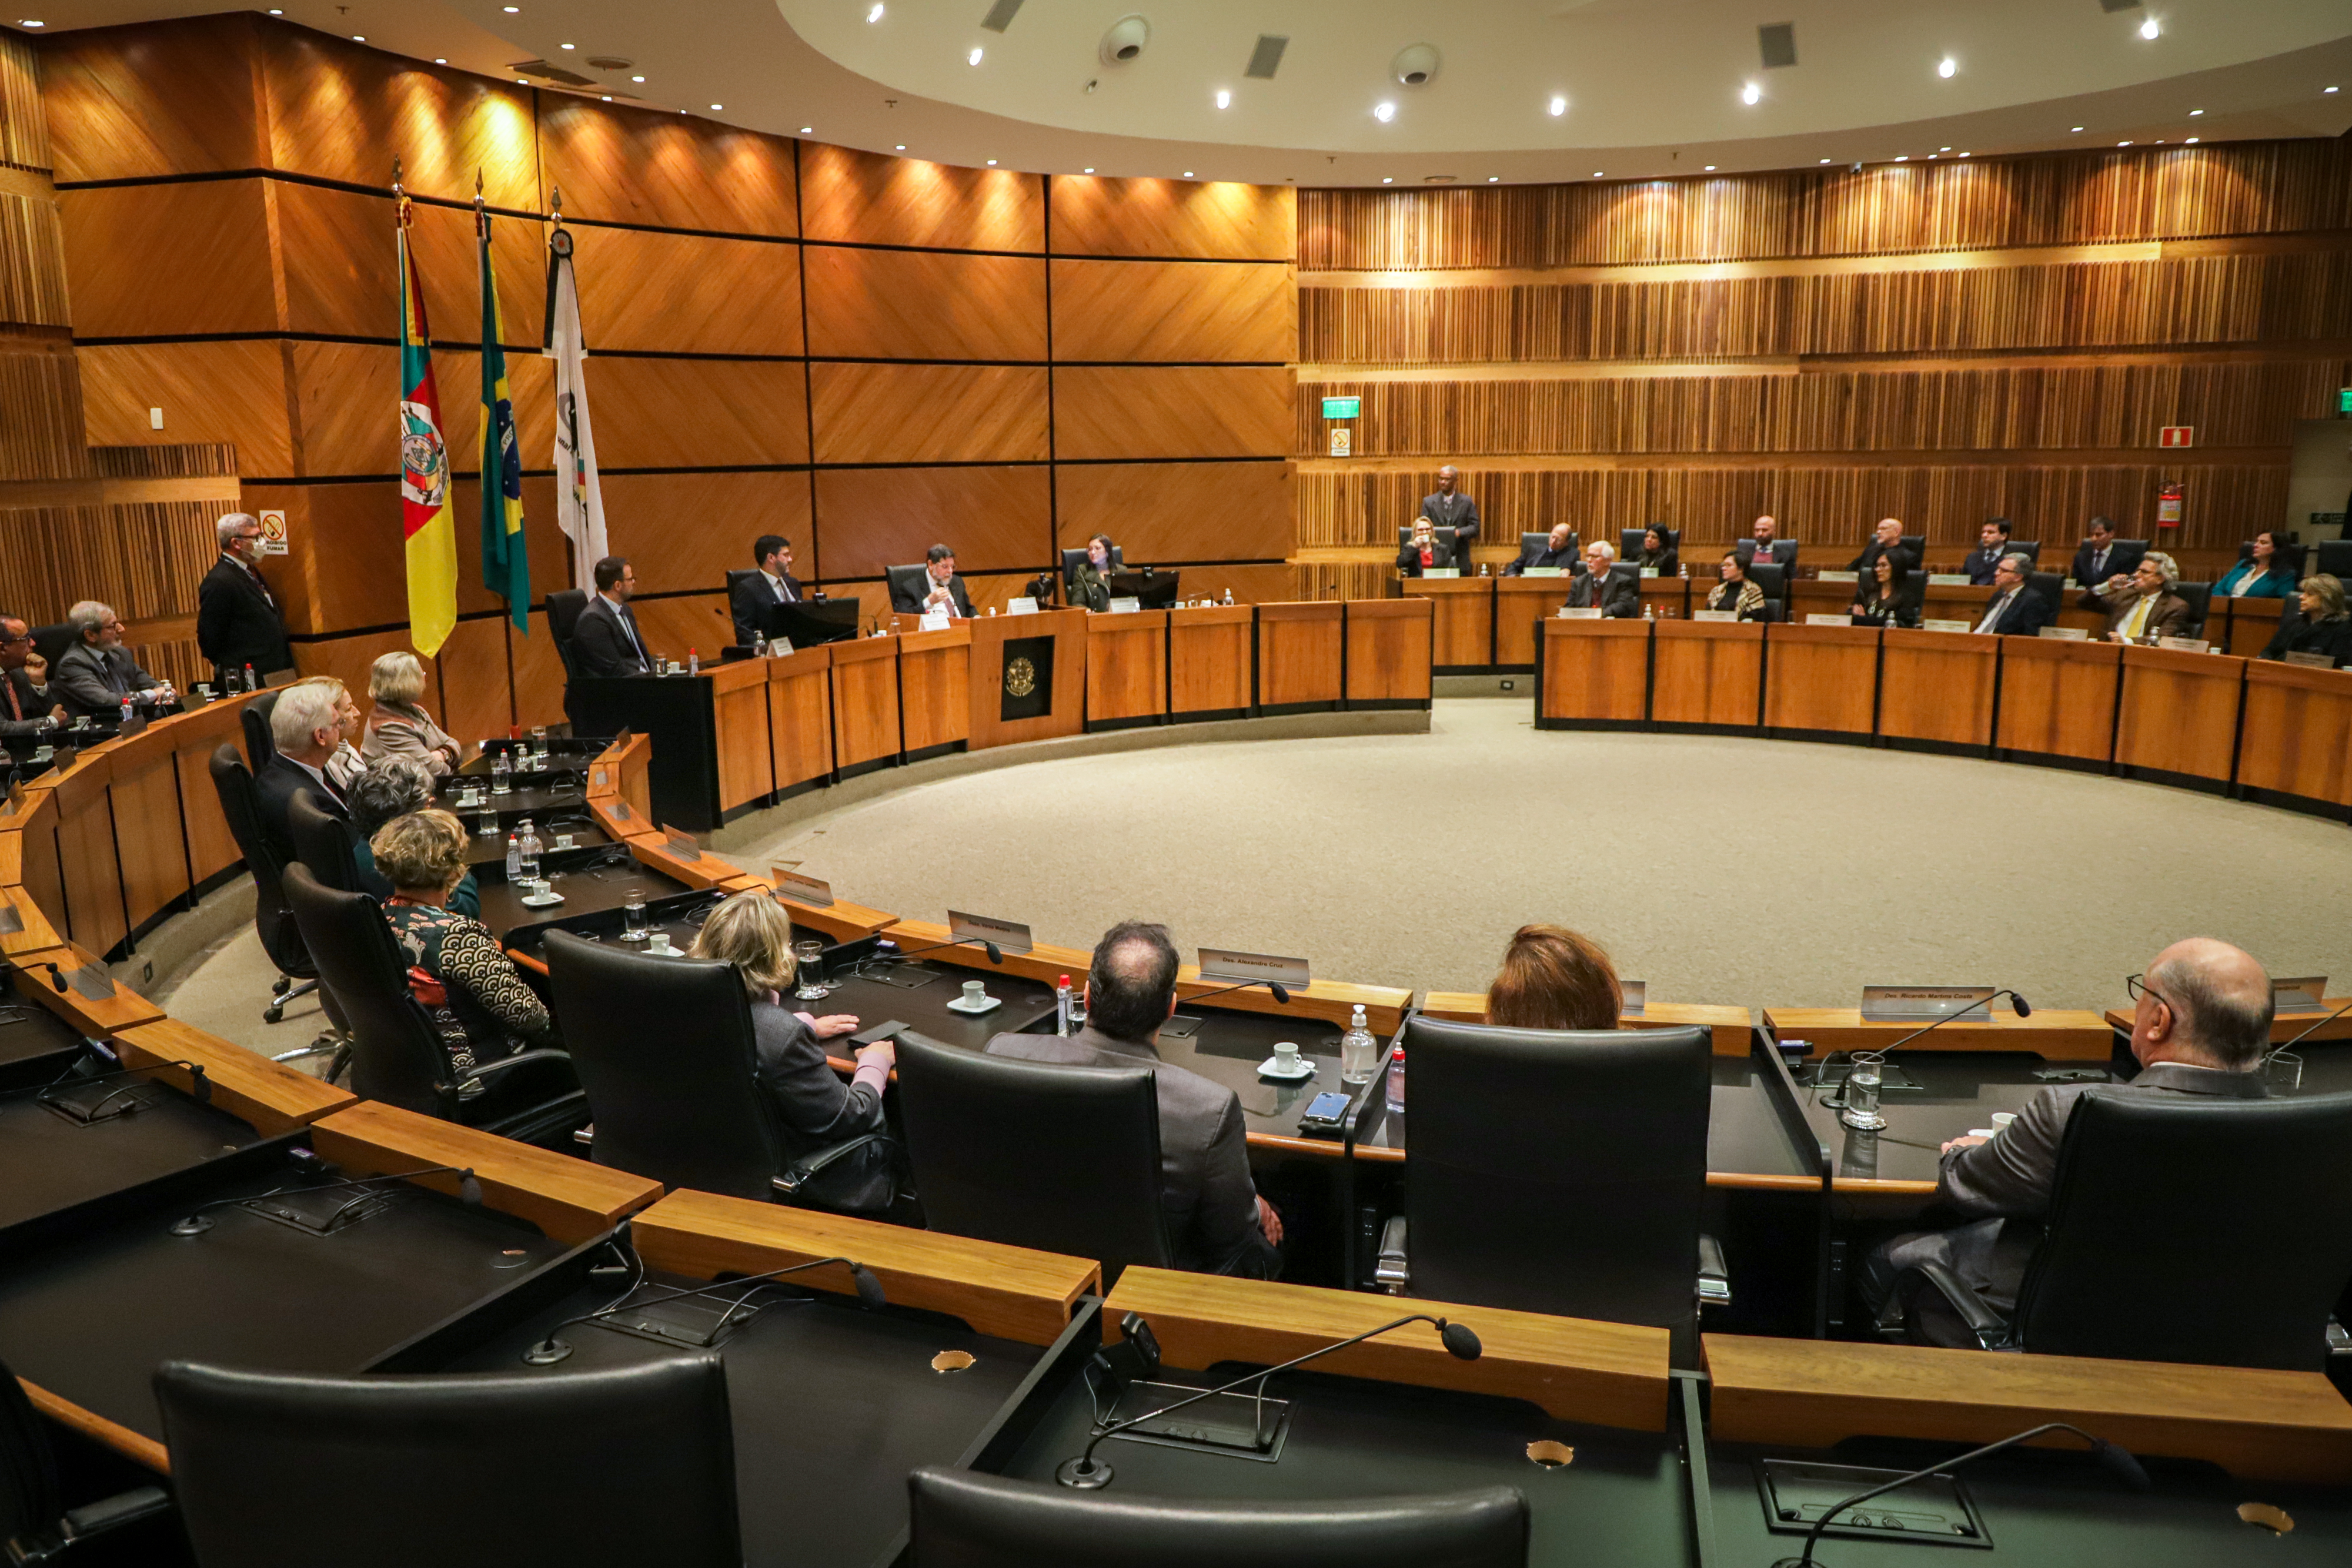 Foto geral do Plenário, com o ministro na cadeira central e os desembargadores em círculo